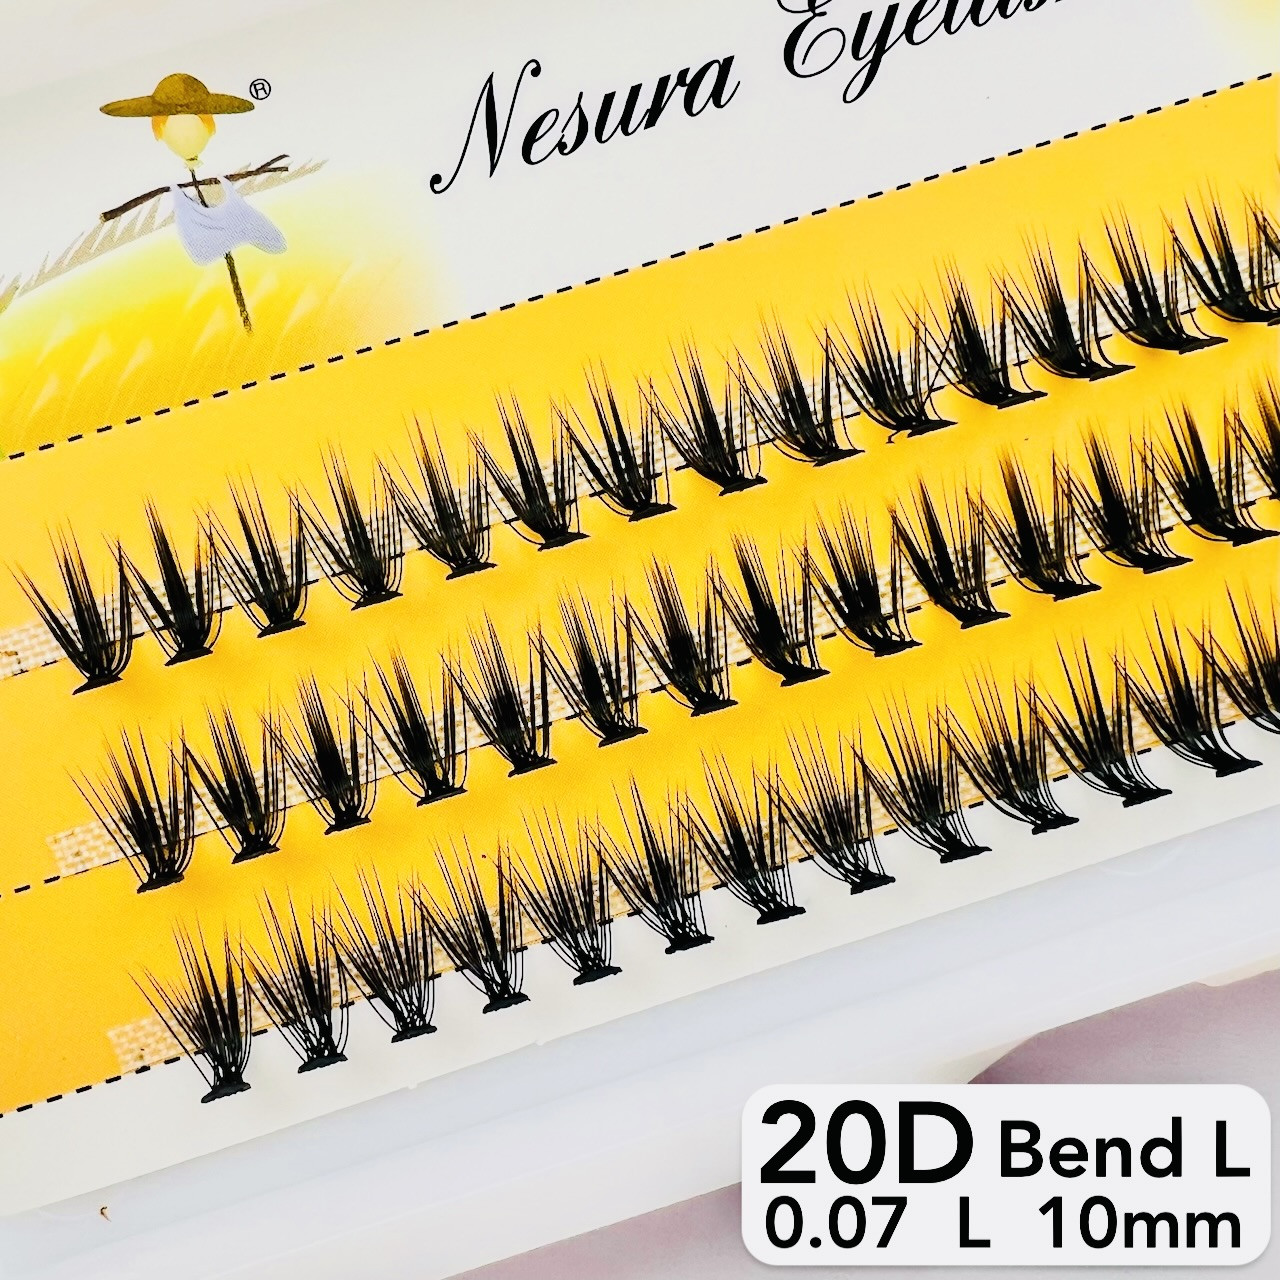 Вії Nesura Eyelash Classic 20D, 0,07, вигин L, 10 мм, 60 пучків накладні вії пучки Несура 20д класік Л вигин